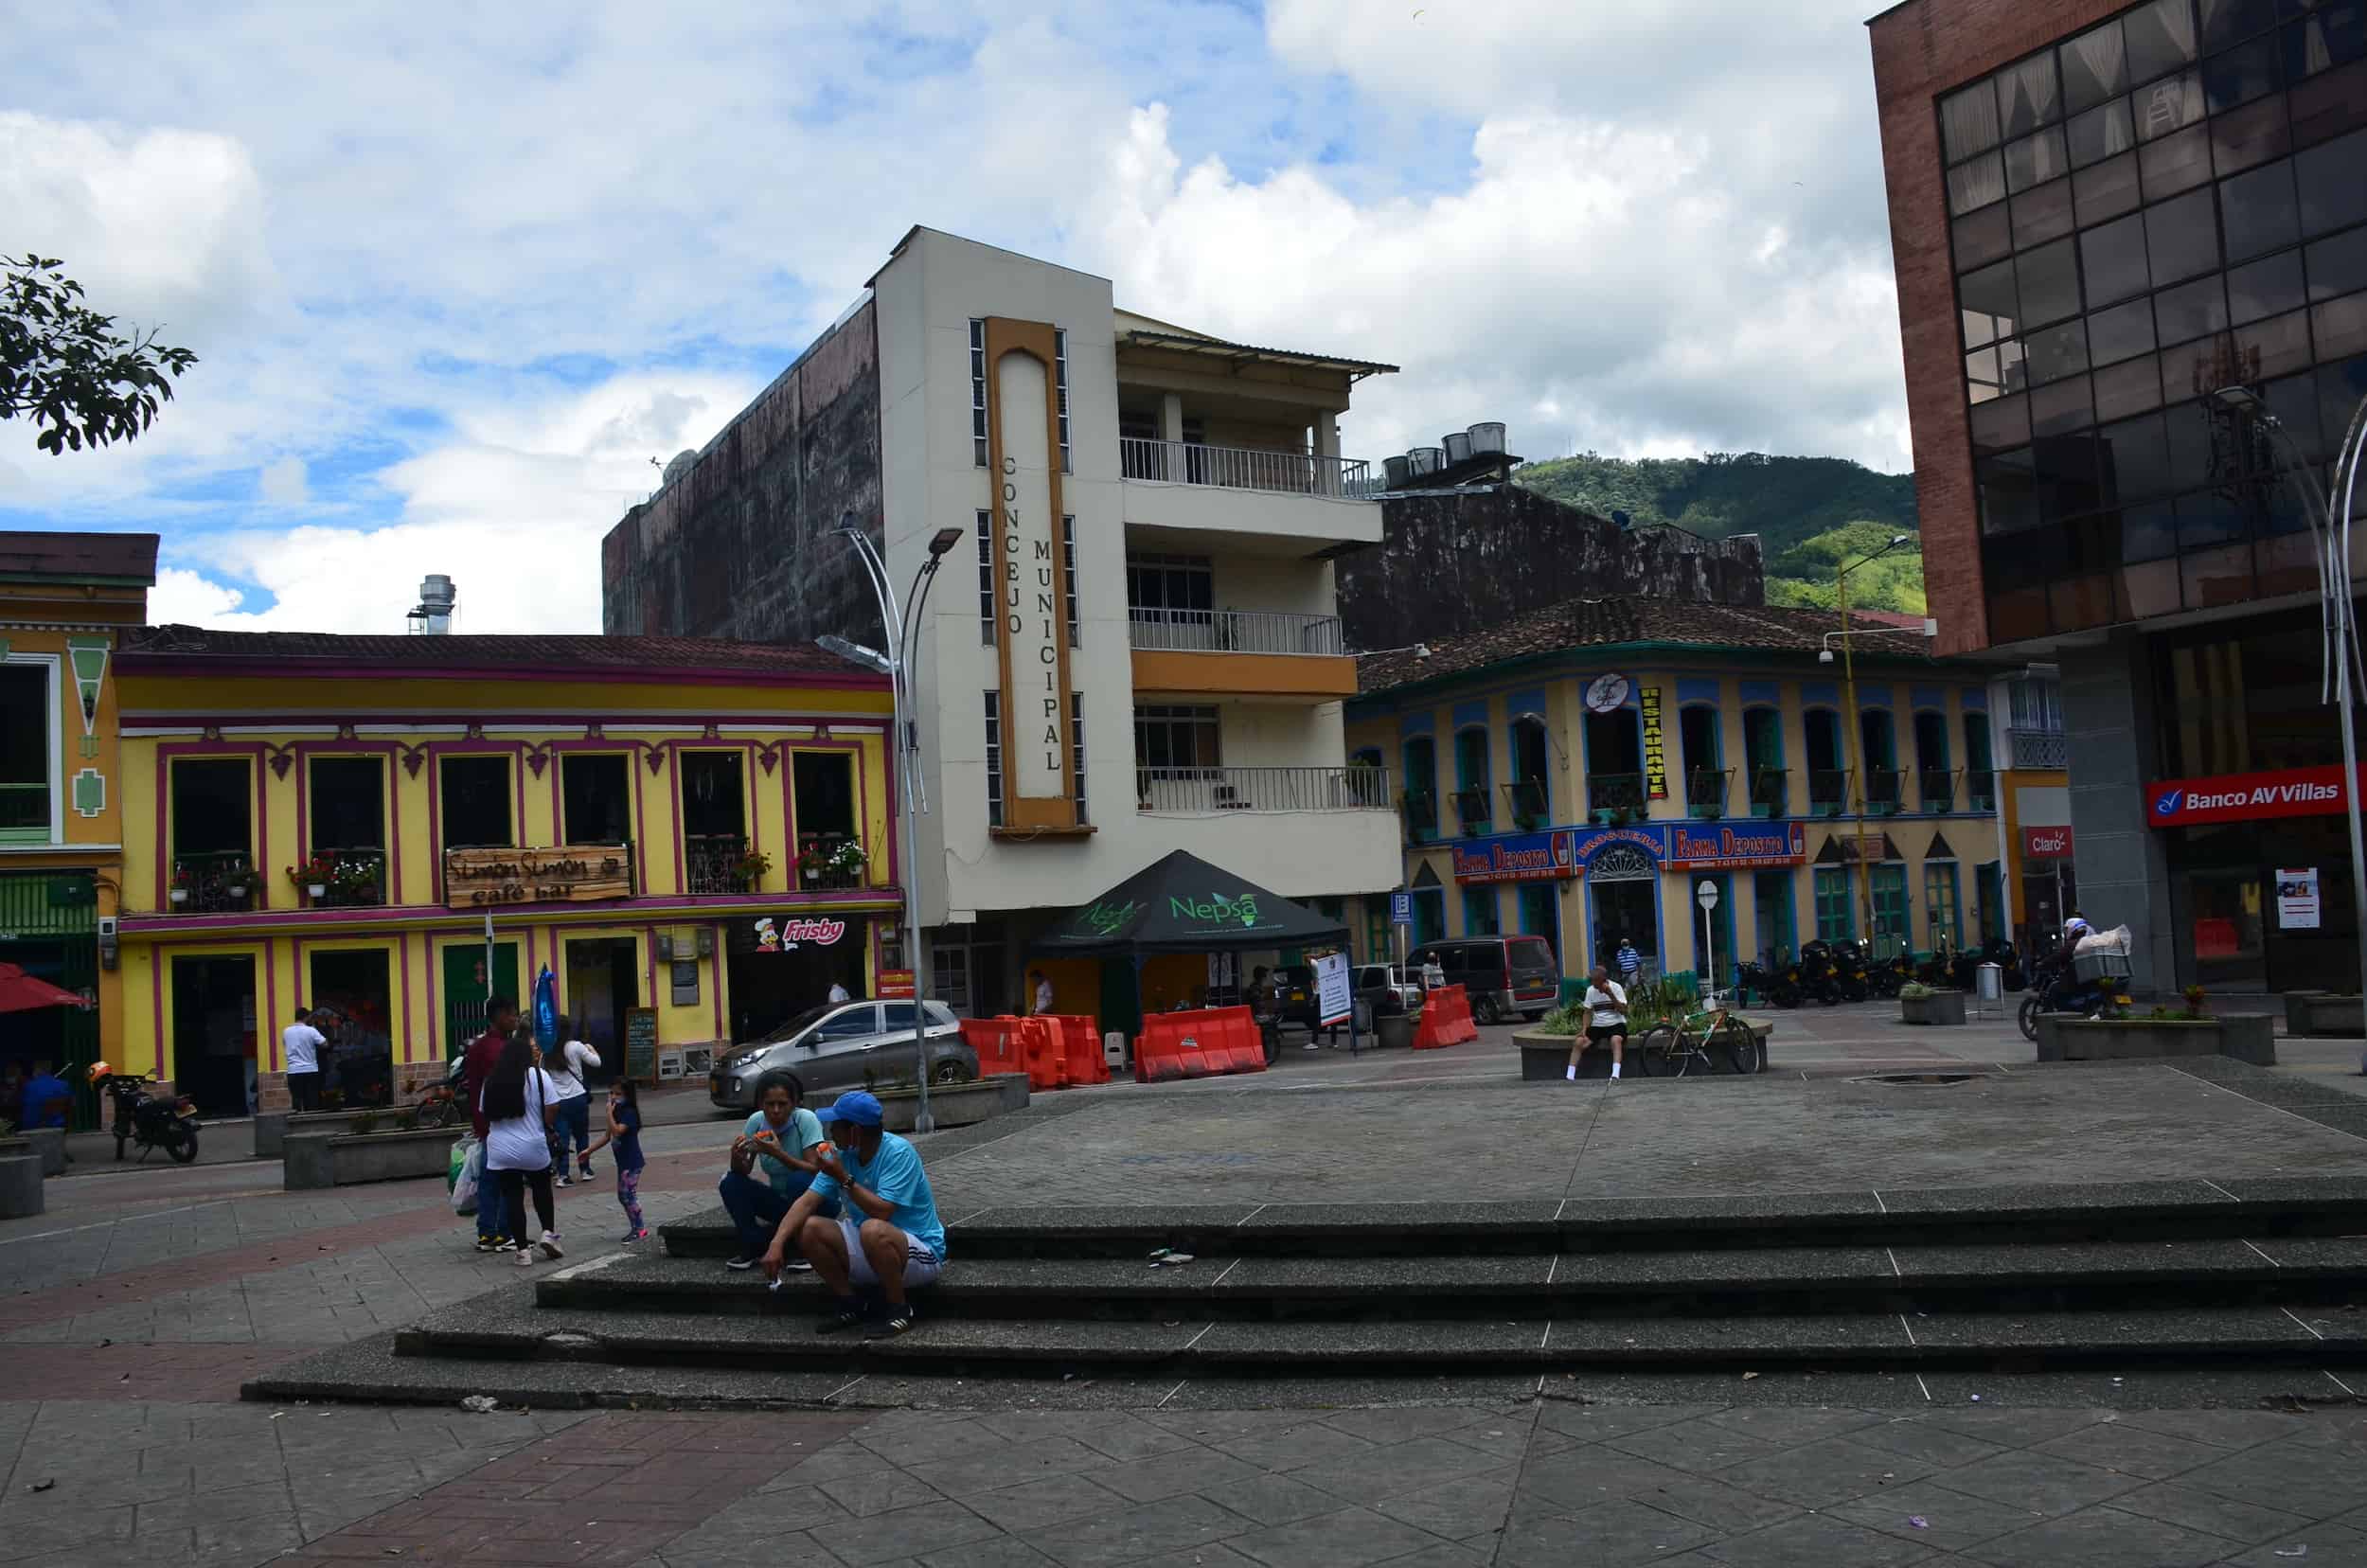 Buildings on Plaza de Bolívar